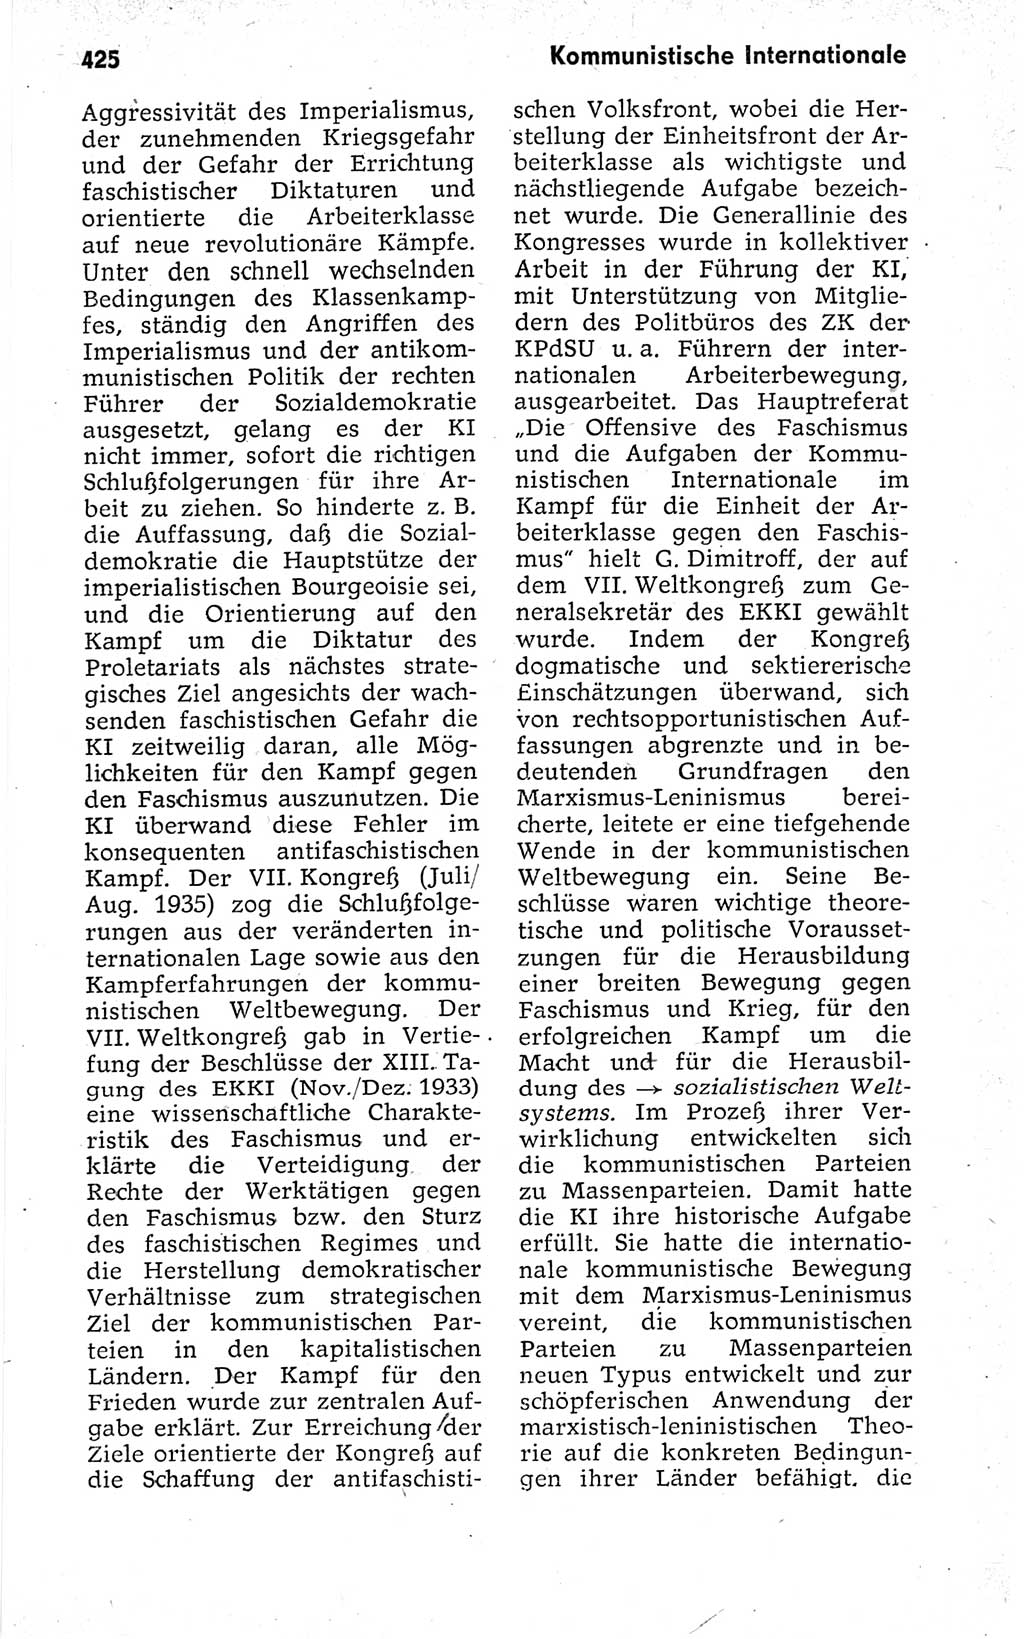 Kleines politisches Wörterbuch [Deutsche Demokratische Republik (DDR)] 1973, Seite 425 (Kl. pol. Wb. DDR 1973, S. 425)